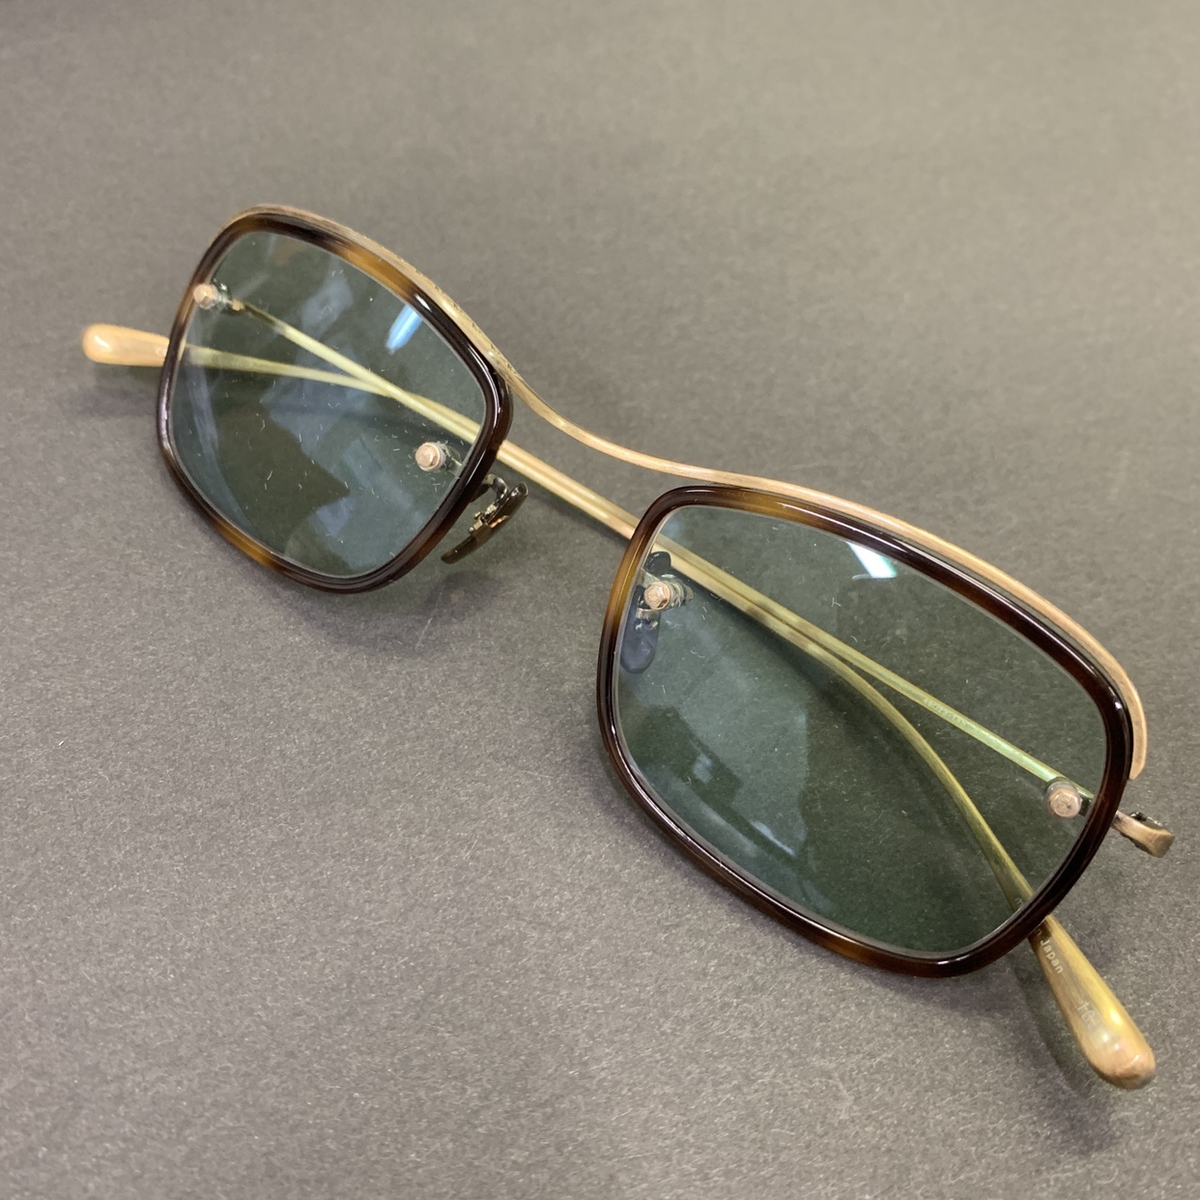 オリバーピープルズのQUIGLY-AG ゴールド 44□22サイズ 眼鏡フレームの買取実績です。